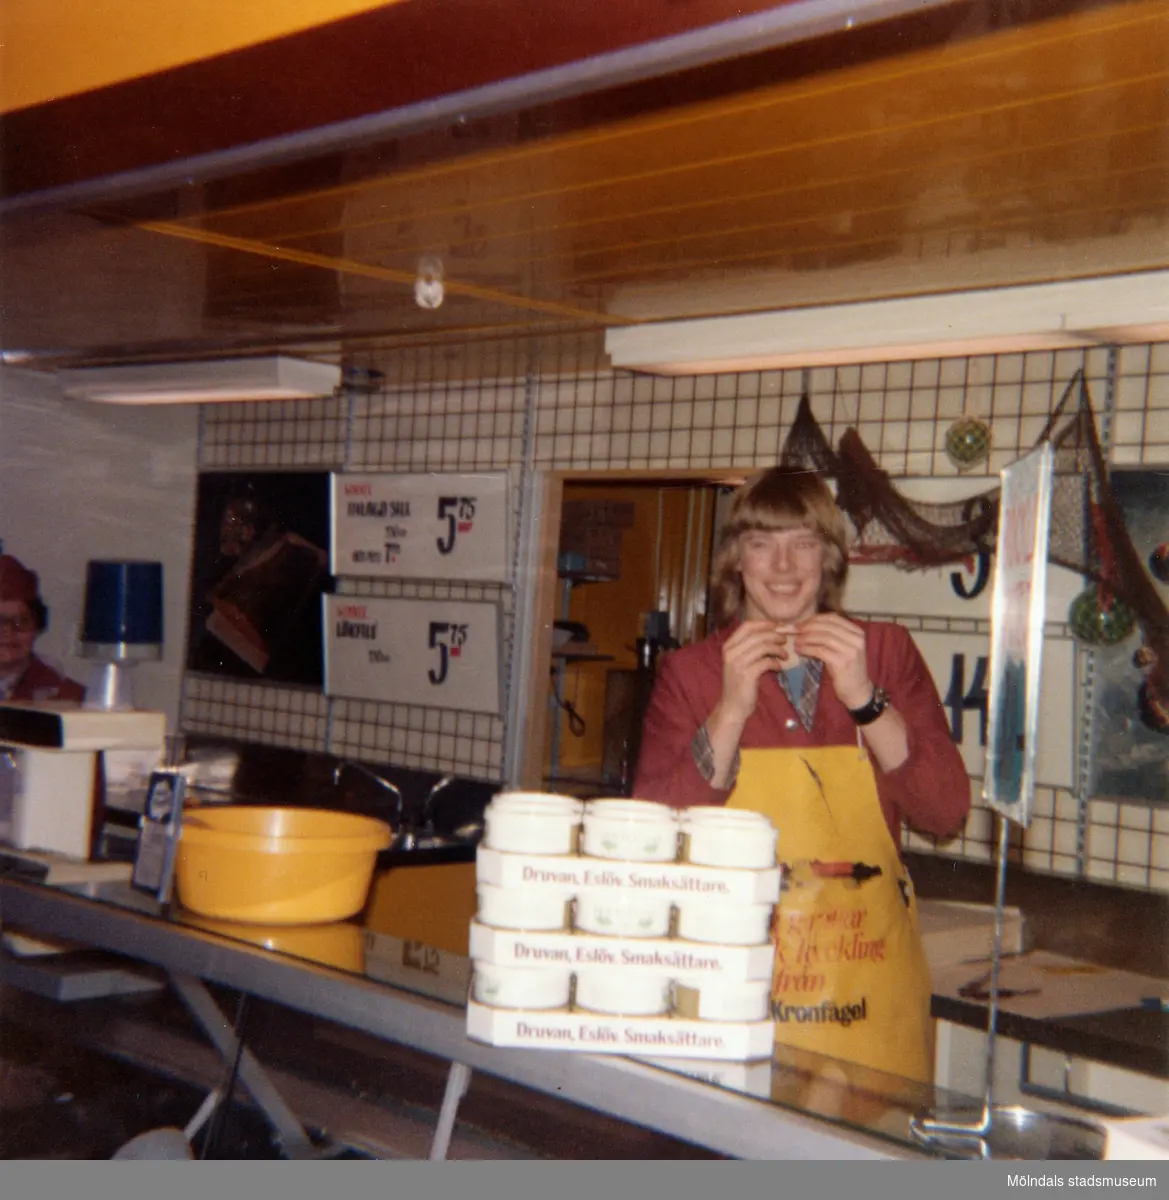 En kvinnlig expedit, klädd i röd rock och gult förkläde, står bakom fiskdisken hållandes en liten räka i händerna, Domus Mölndal C efter 1976. På disken ses förpackningar från Druvan, Eslöv, Smaksättare. På den vit-kaklade väggen i bakgrunden ses skyltar med olika sill-erbjudanden från Winner (Konsum-produkt).